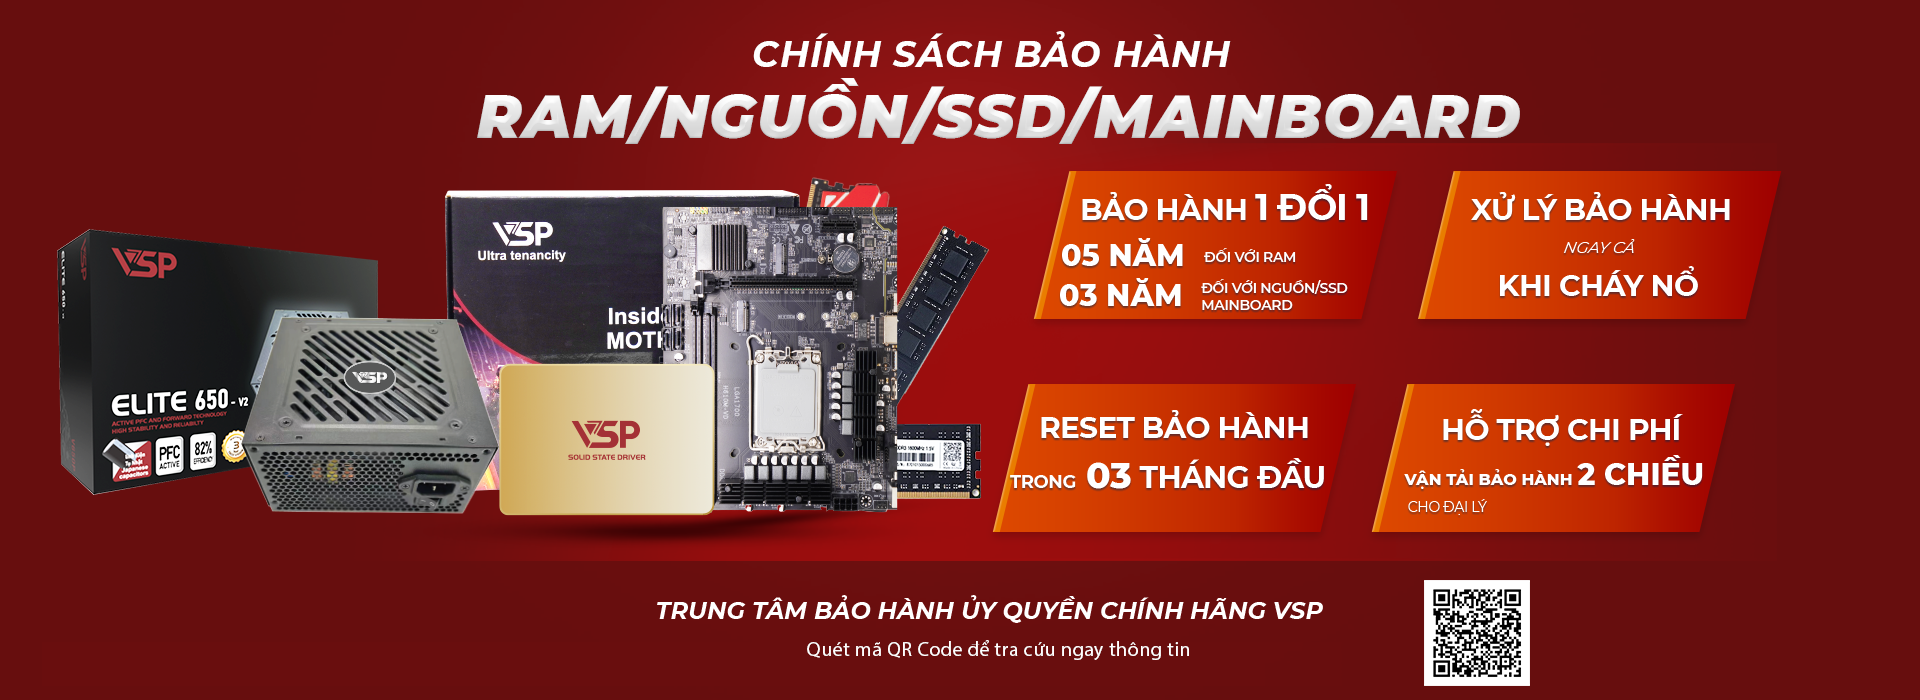 Chính sách bảo hành Ram/Nguồn/SSD/Mainboard